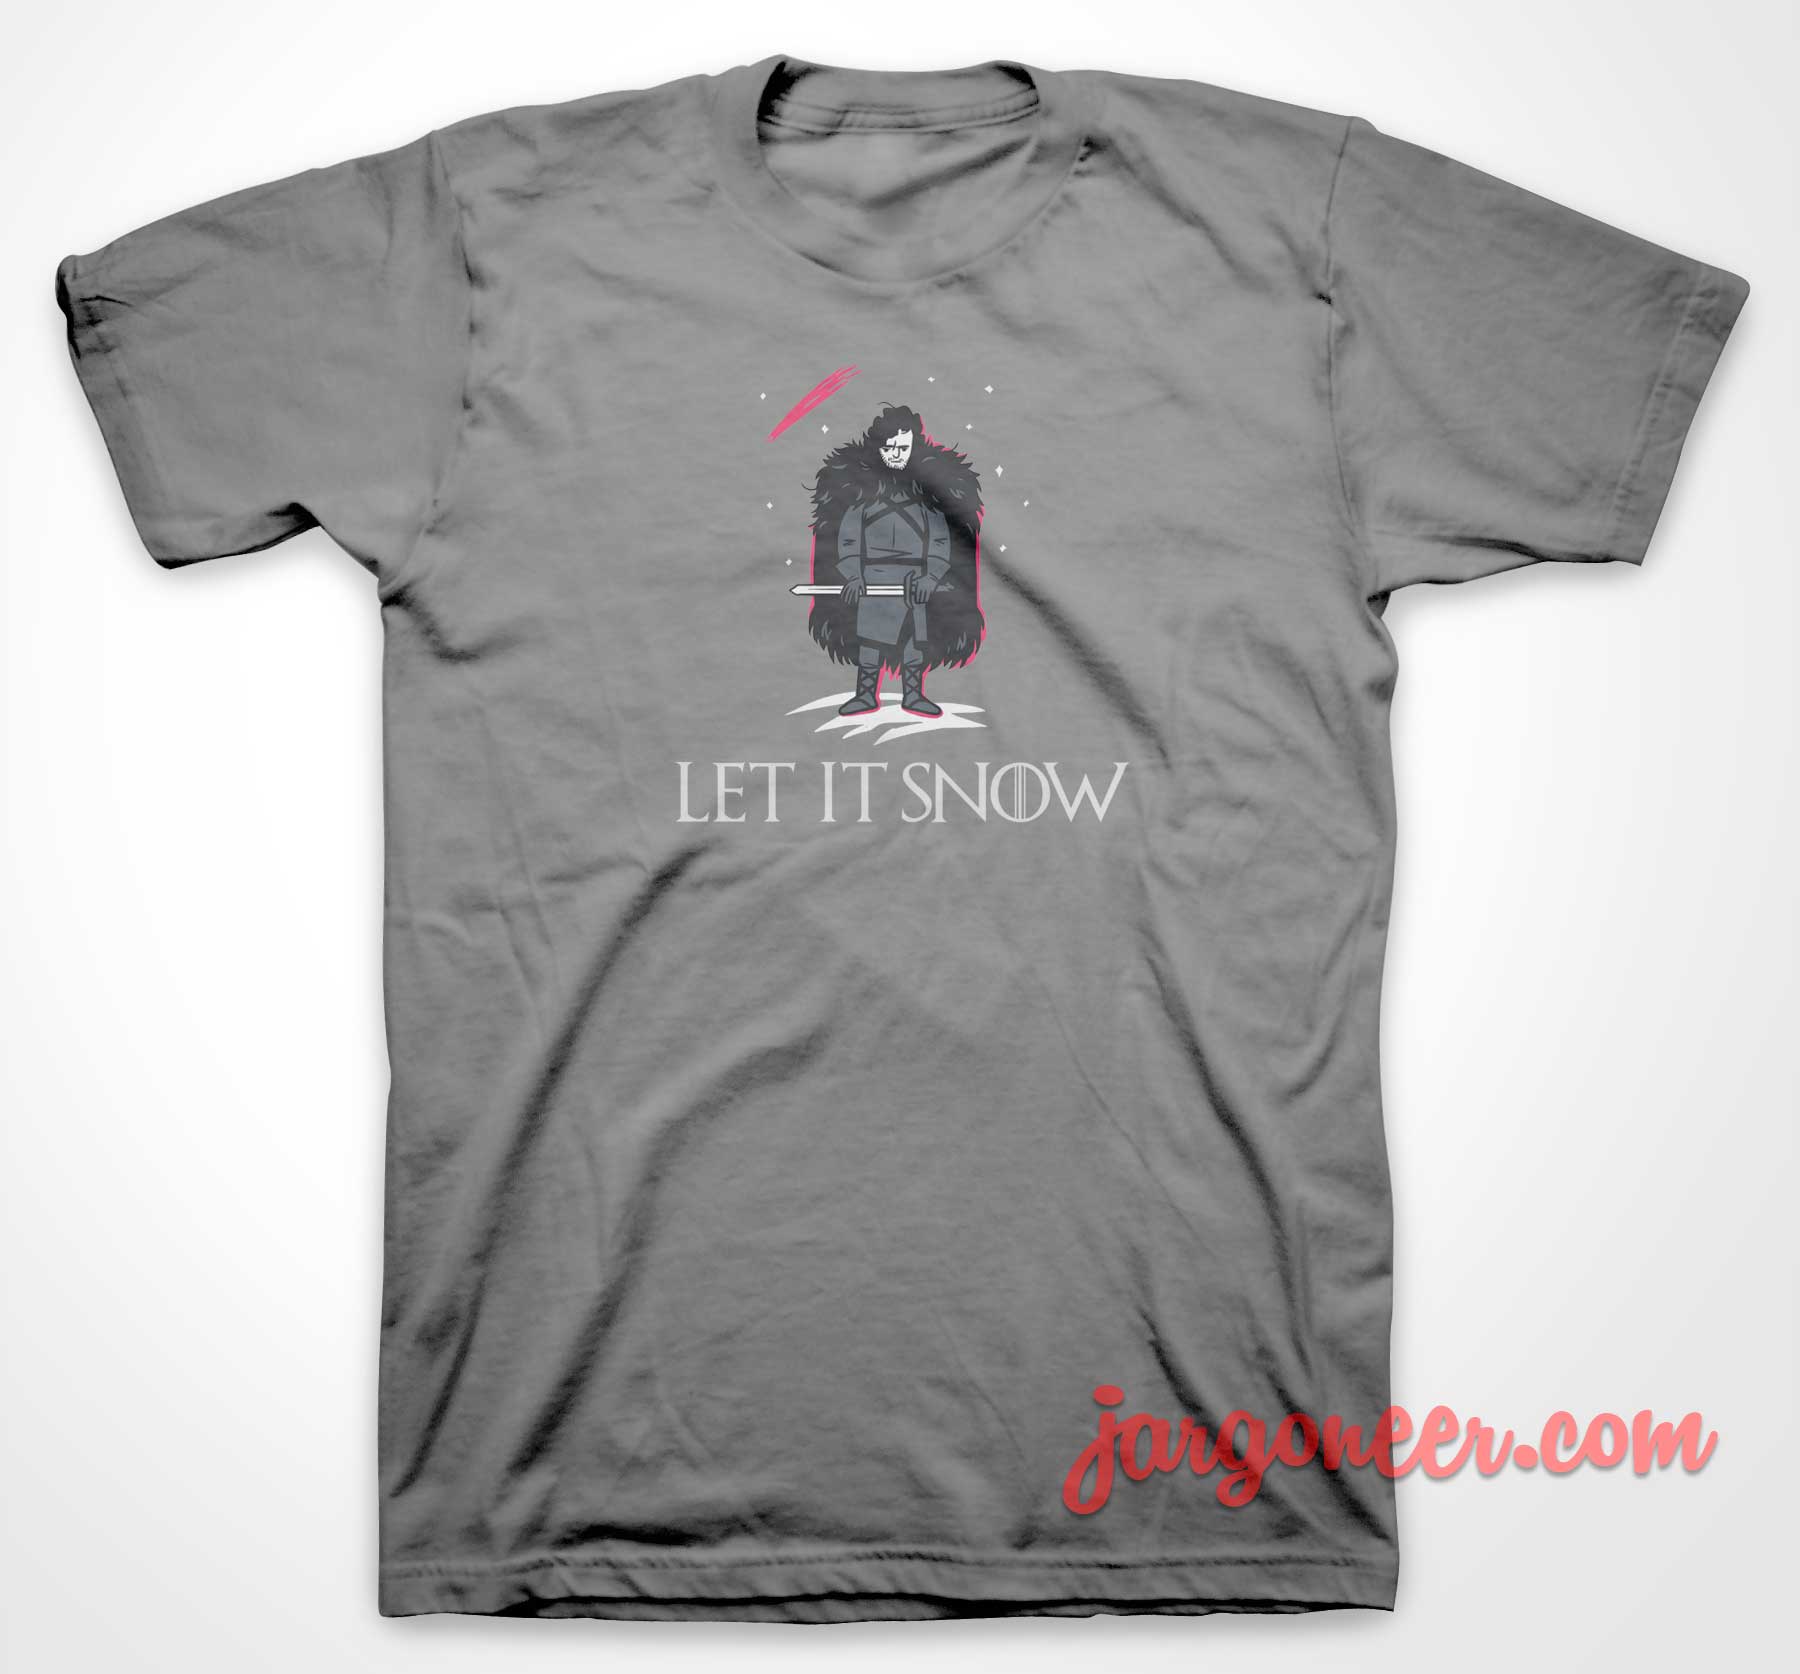 Let It Snow - Shop Unique Graphic Cool Shirt Designs